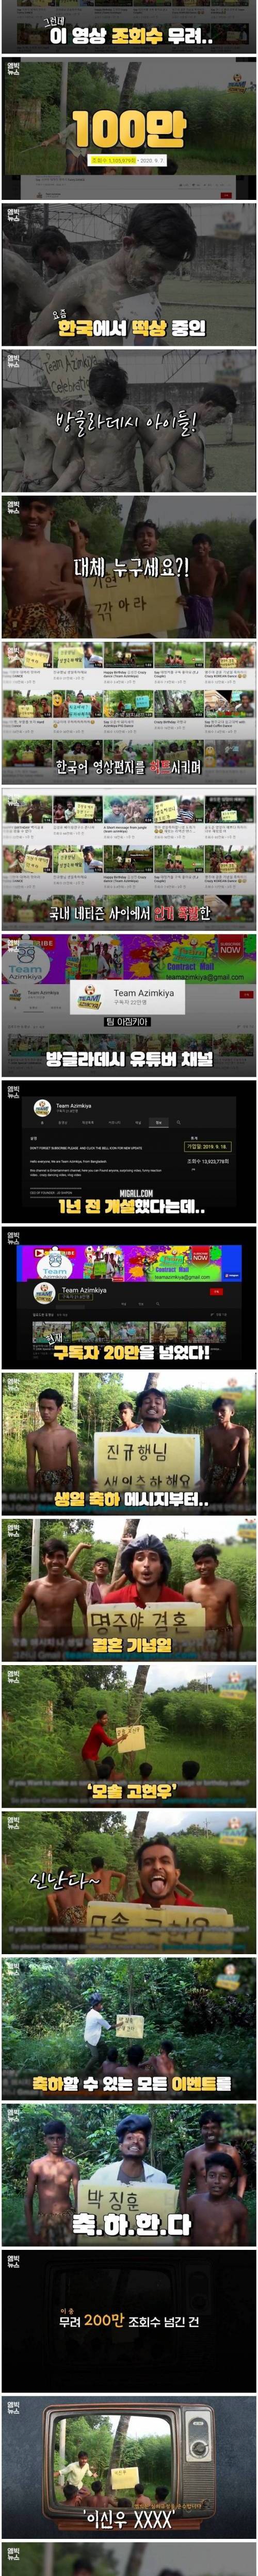 [스압] 방글라데시에서 보내는 만원짜리 한국어 영상편지.jpg